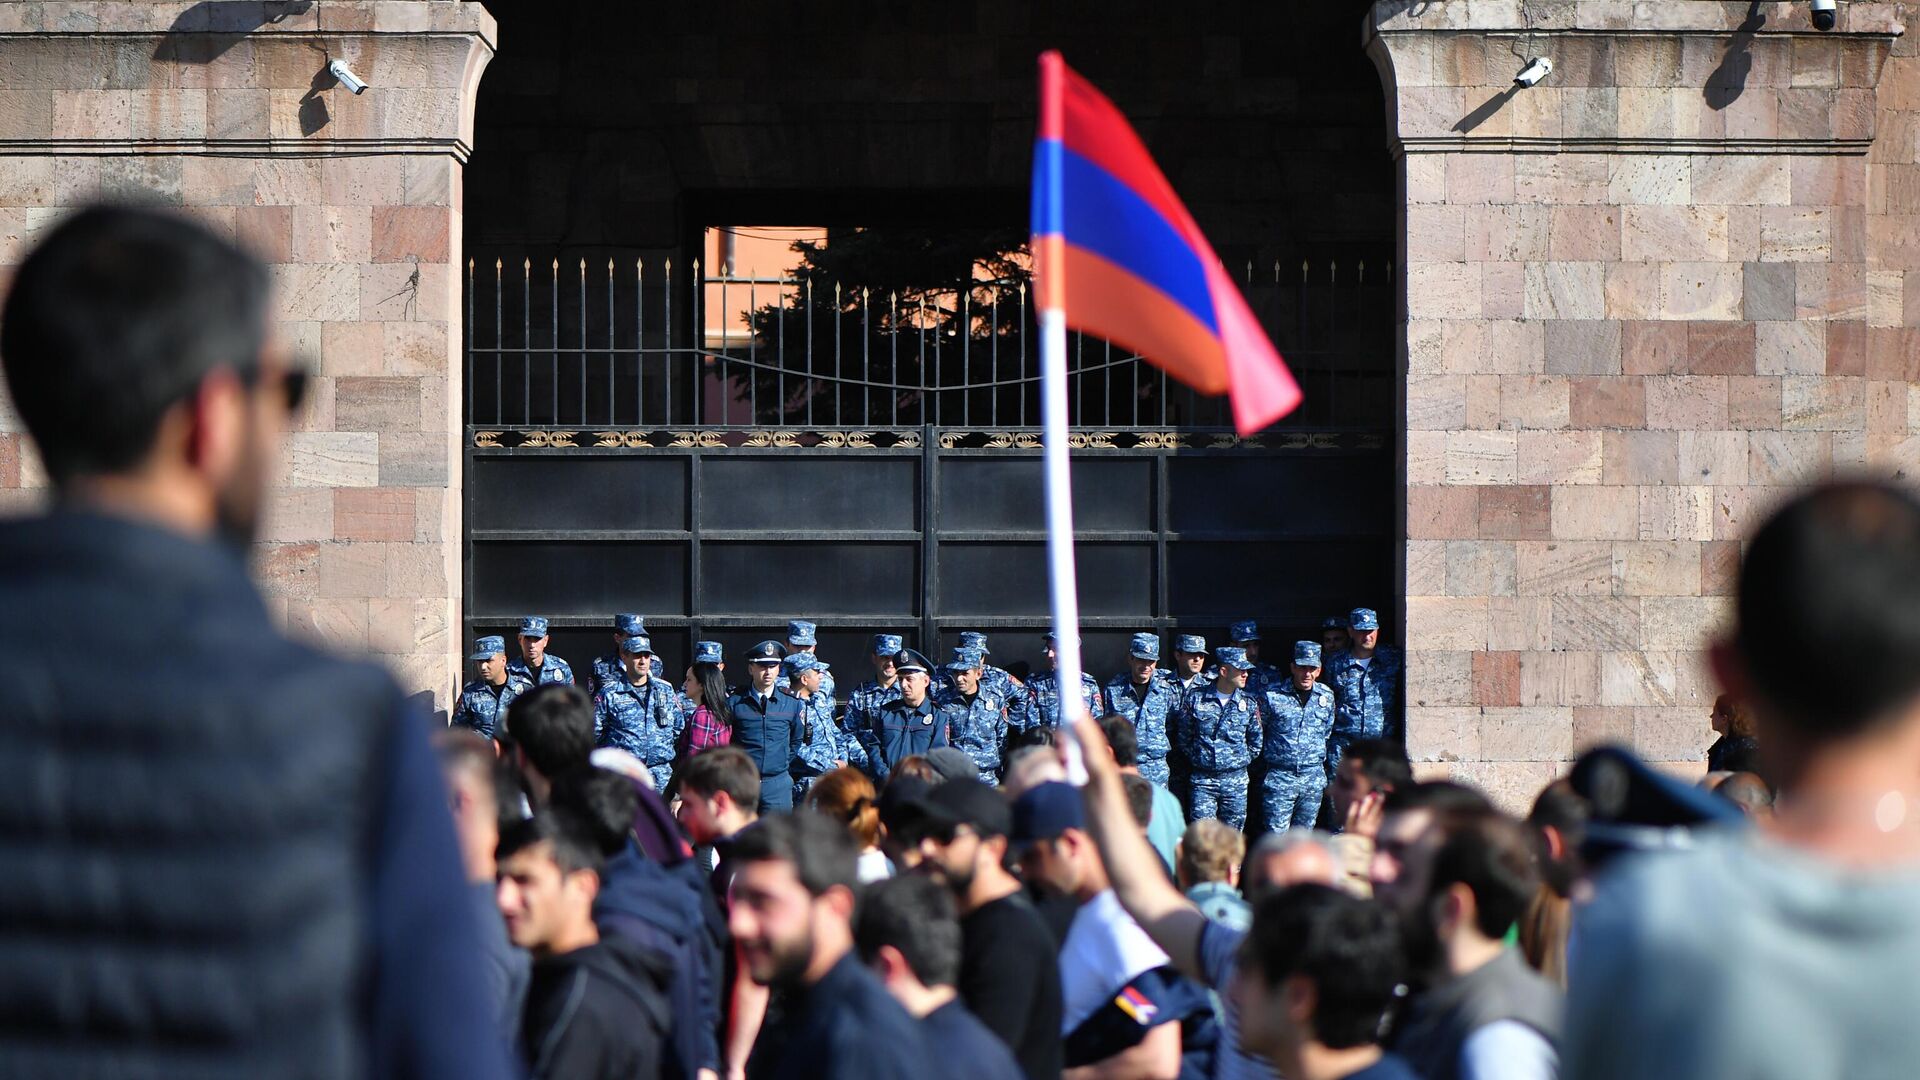 У протестов в Армении есть перспективы, но импичмент Пашиняну малореален, считает эксперт